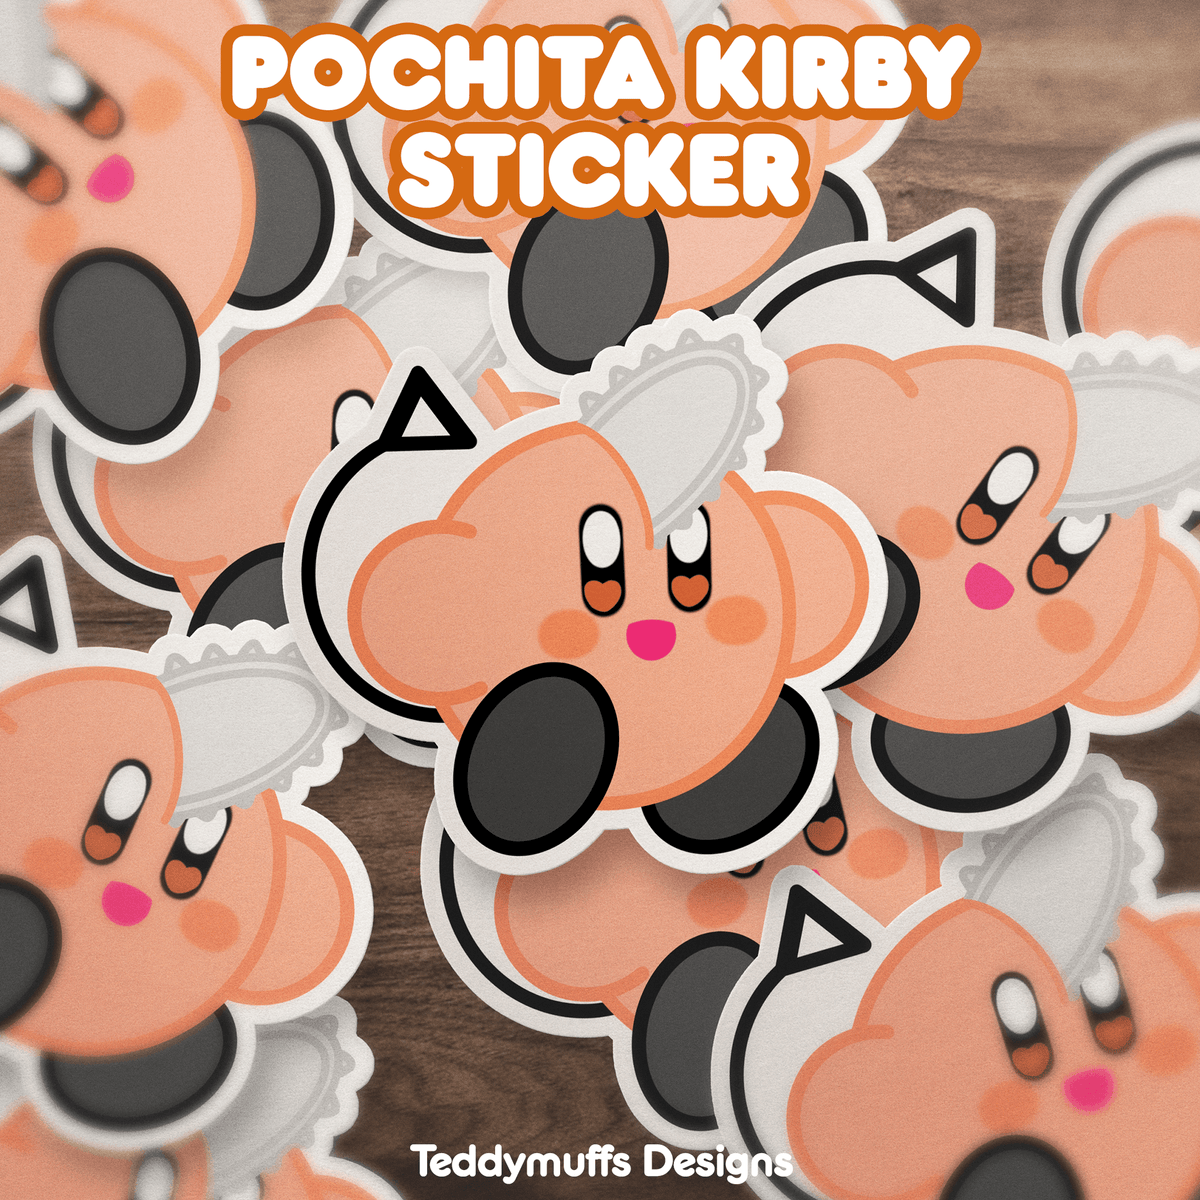 Pochita x Kirby Sticker